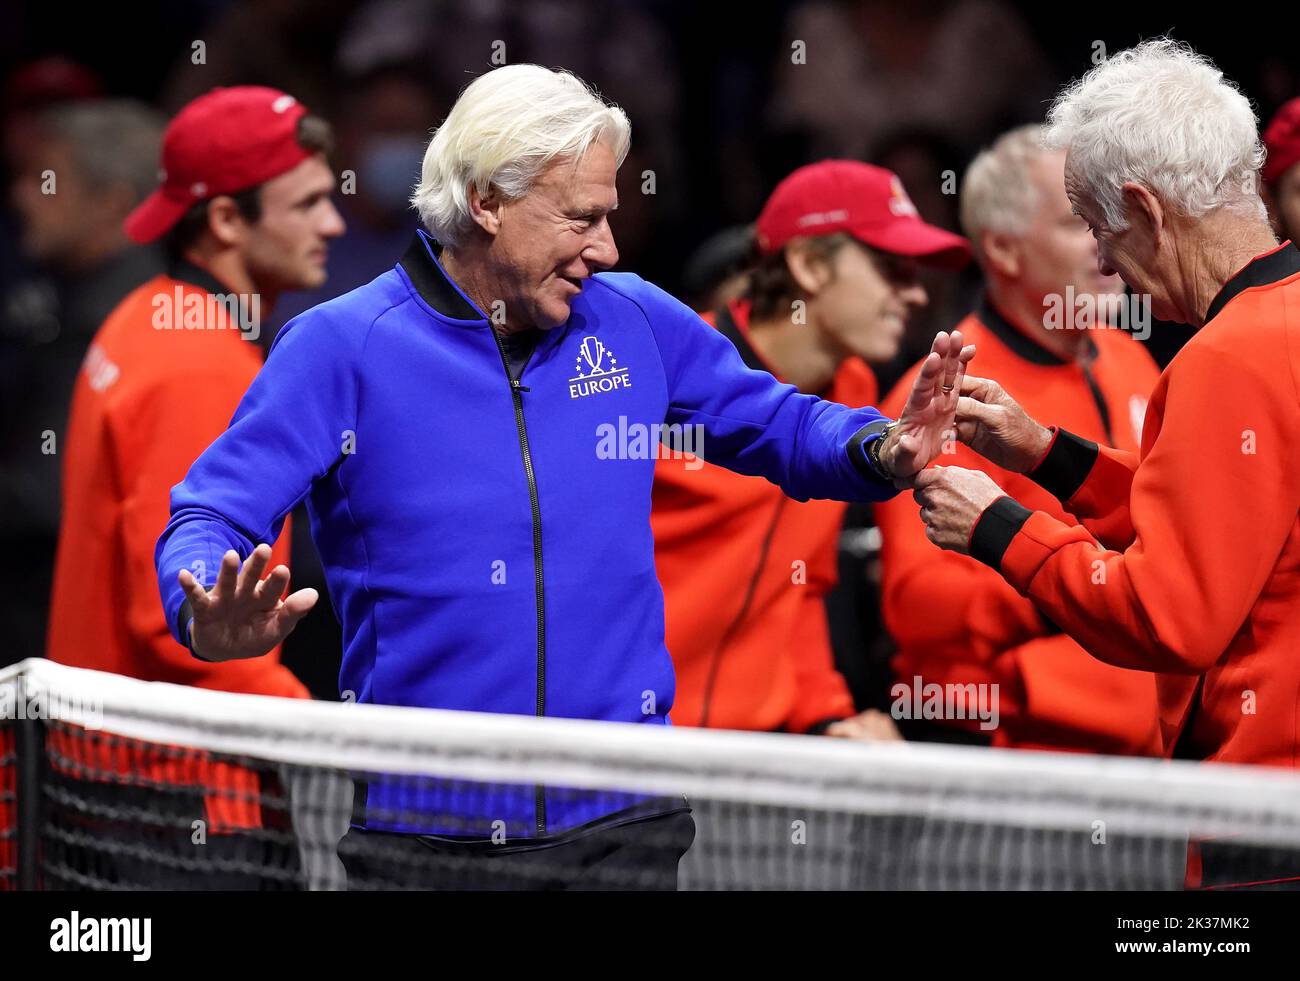 El capitán del equipo de Europa Bjorn Borg (izquierda) y el capitán del equipo mundial John McEnroe en el tercer día de la Copa Laver en el O2 Arena, Londres. Fecha de la foto: Domingo 25 de septiembre de 2022. Foto de stock